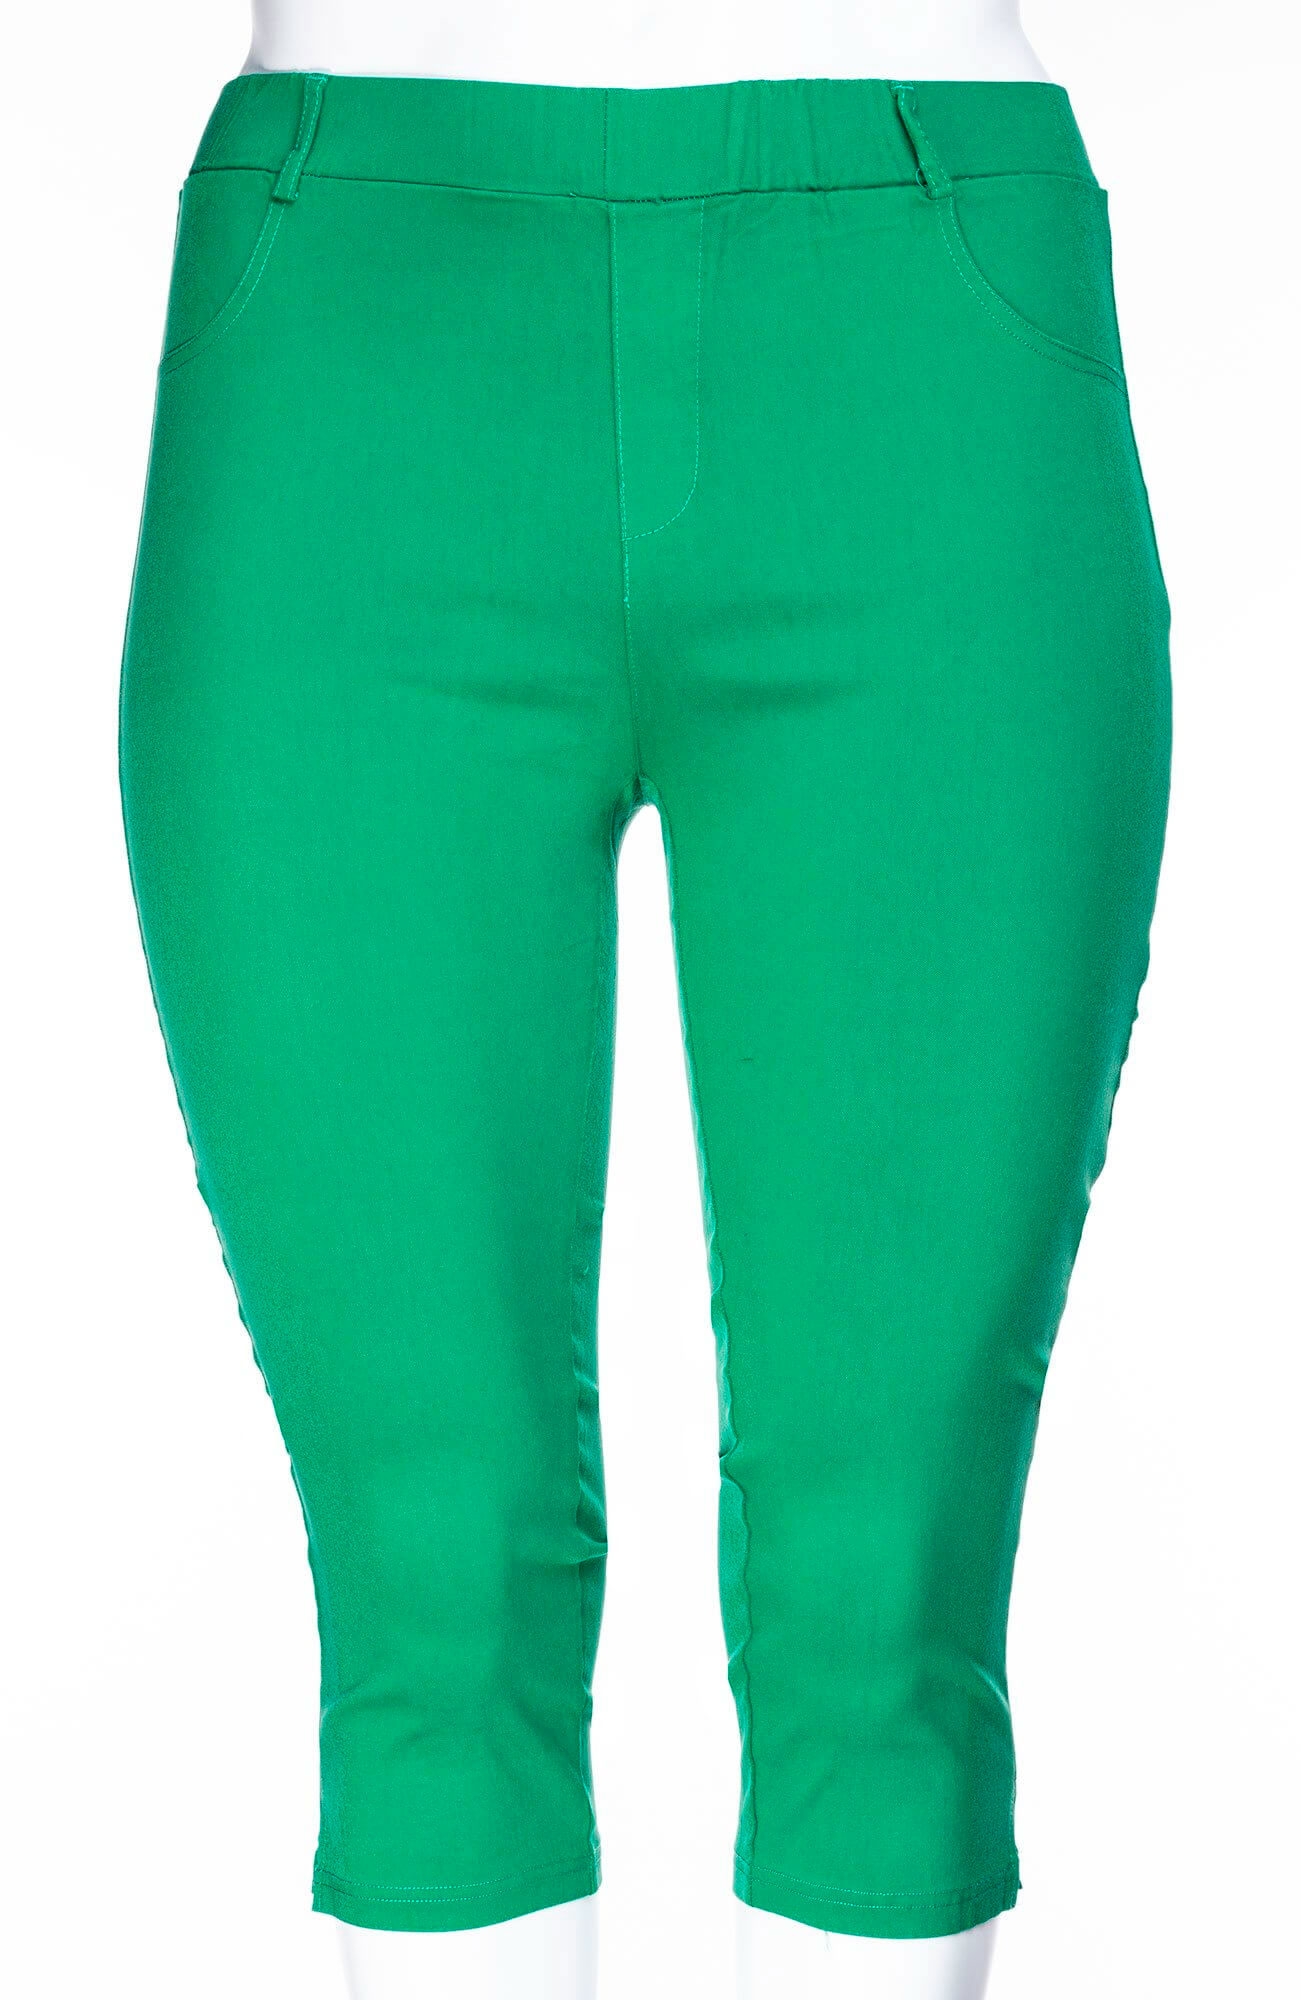 Strækbare grønne capri leggings fra Sandgaard